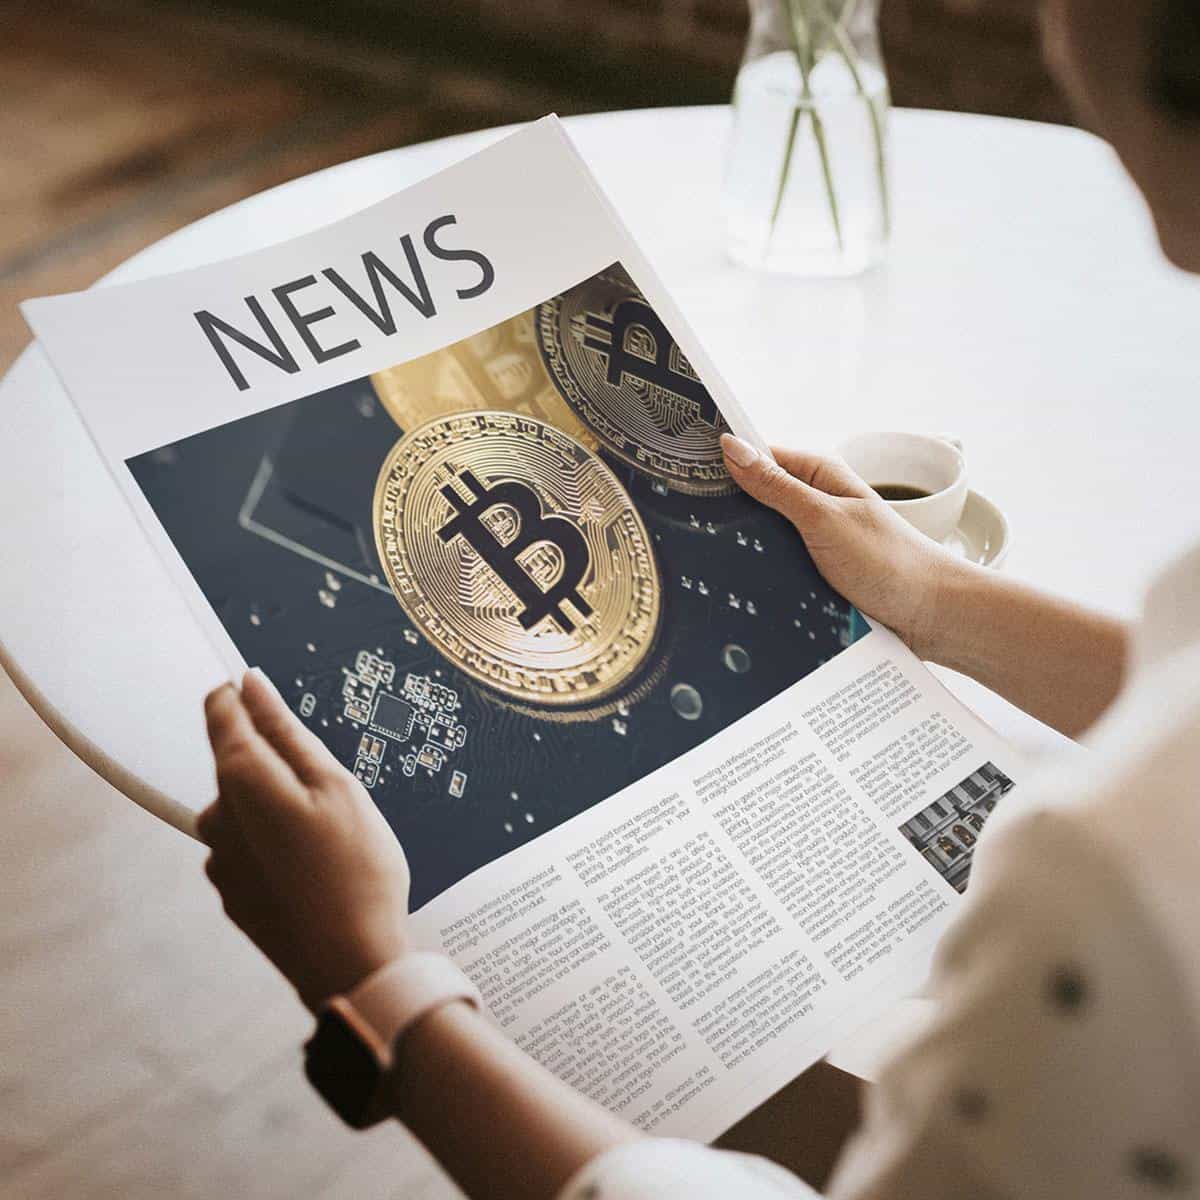                         News über Kryptowährungen